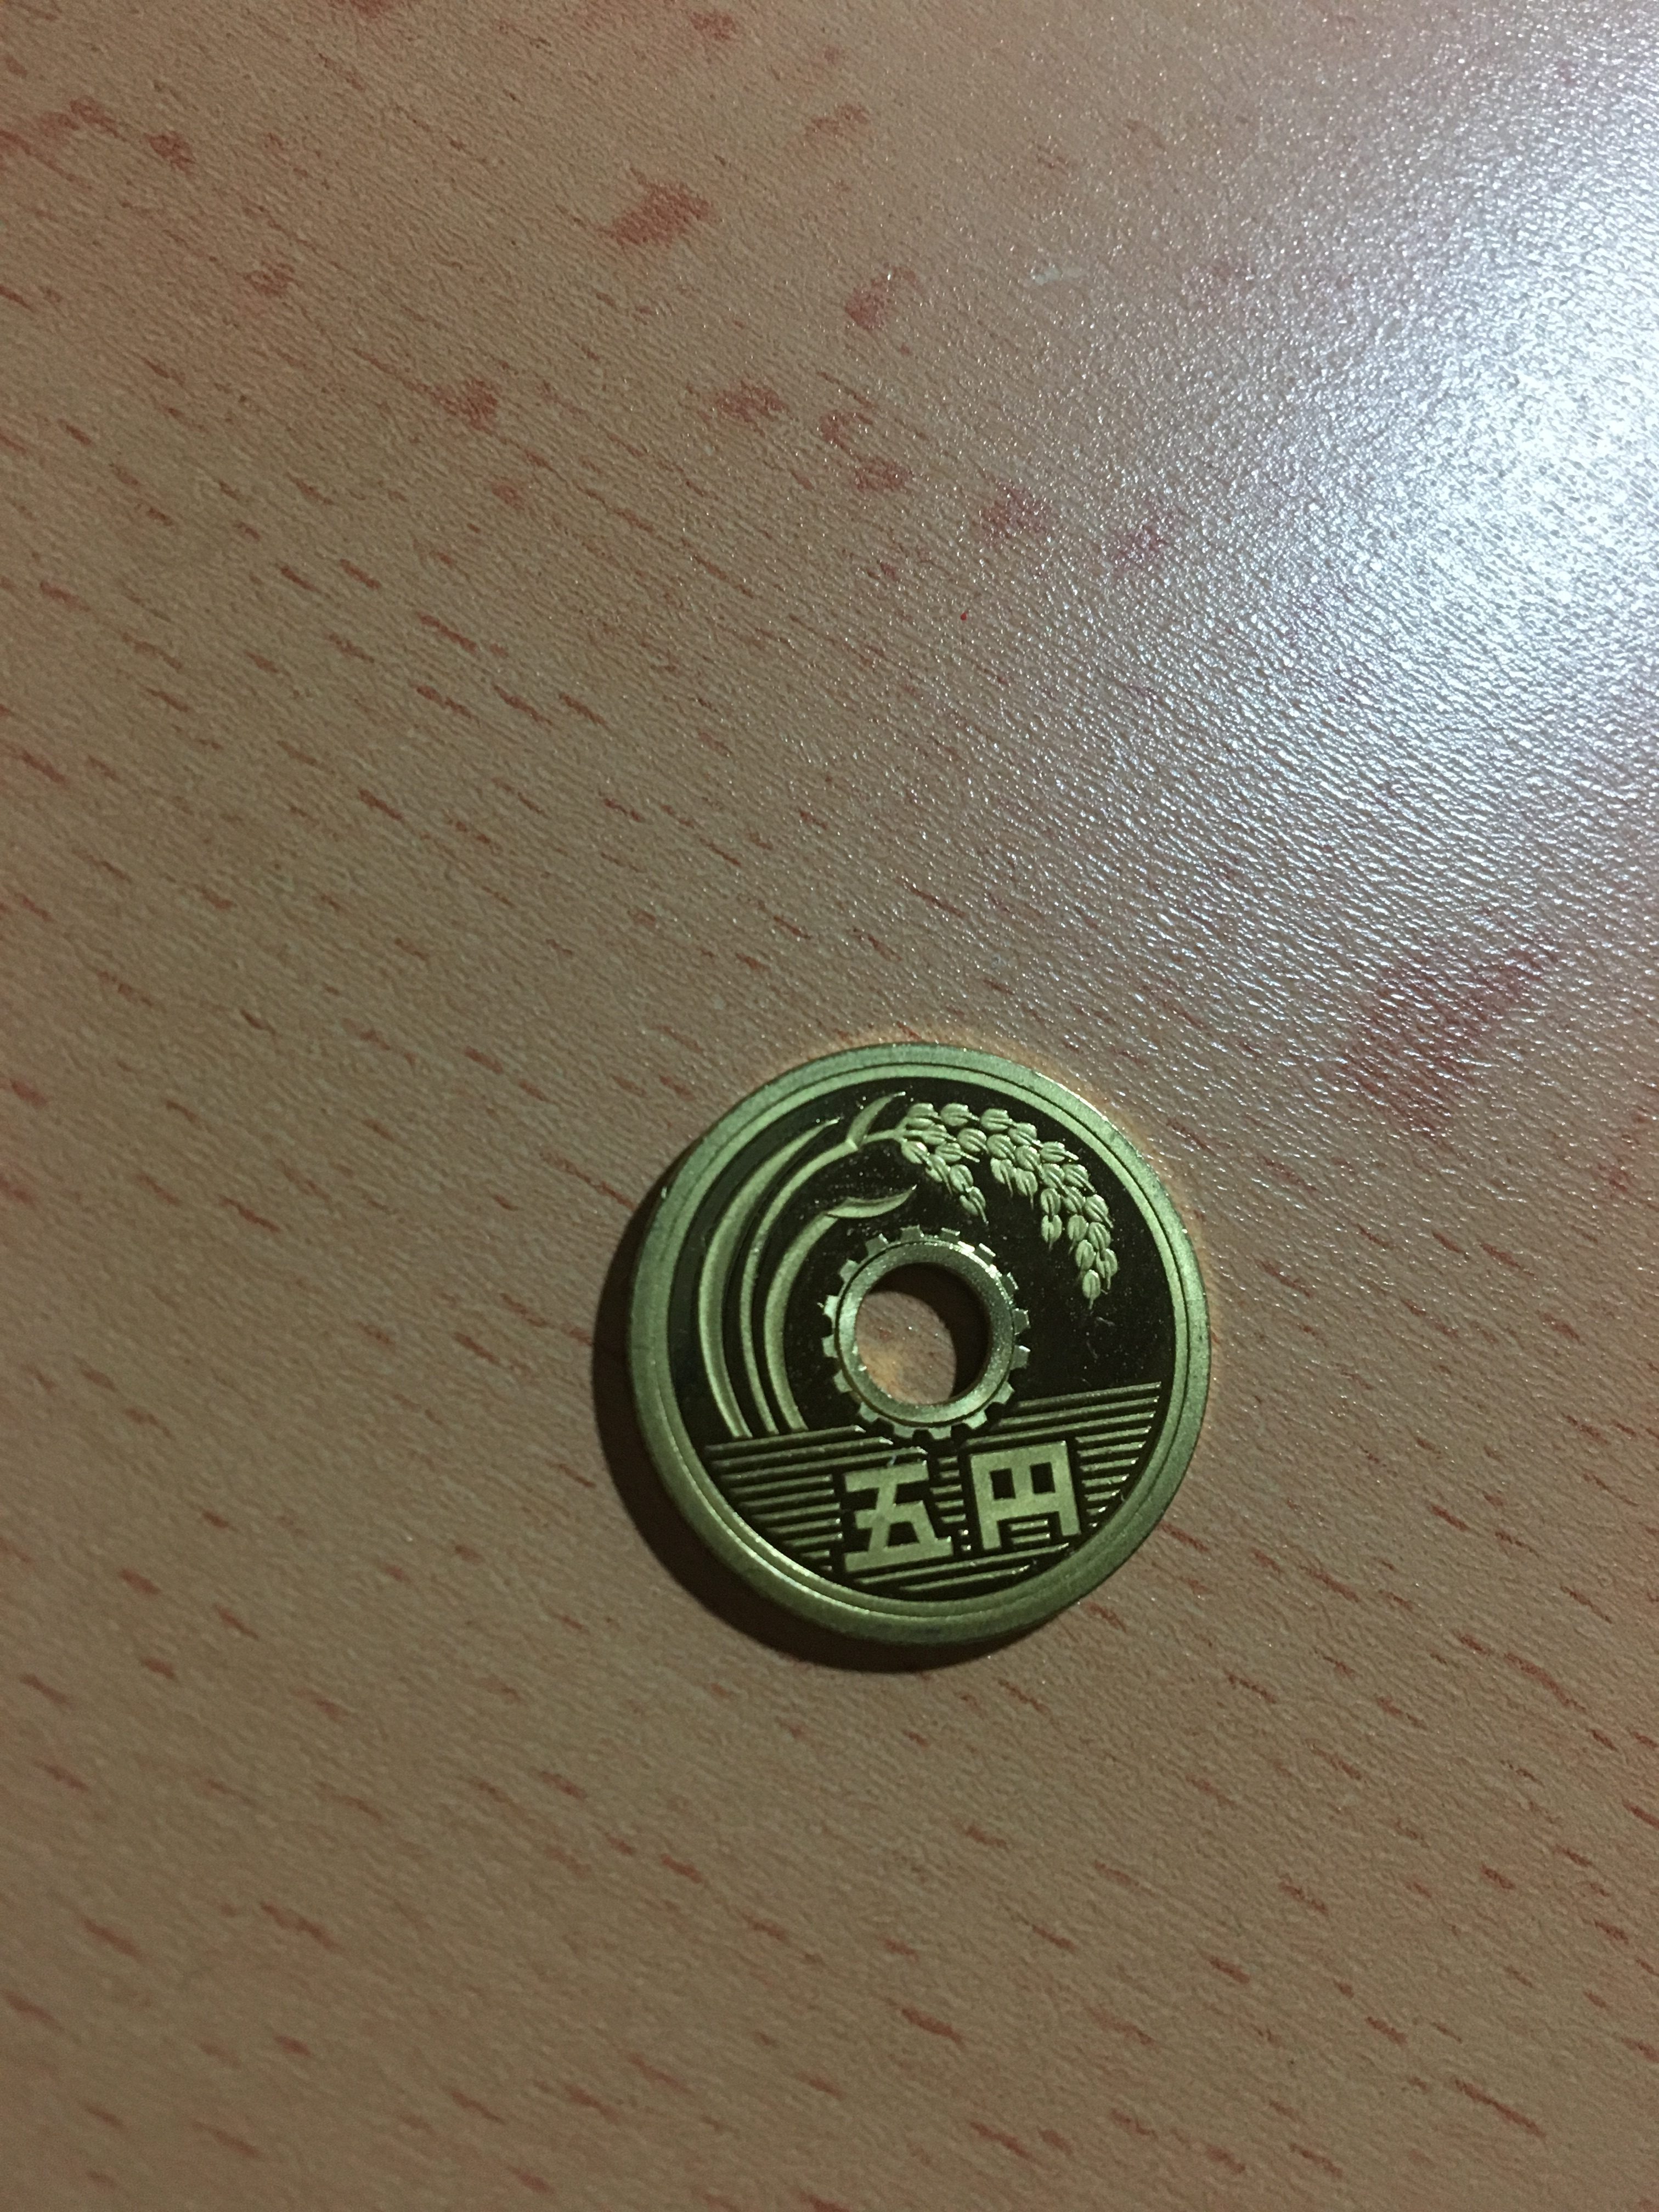 こんな5円玉があるとは 珍しいレア5円玉 世界一周学校